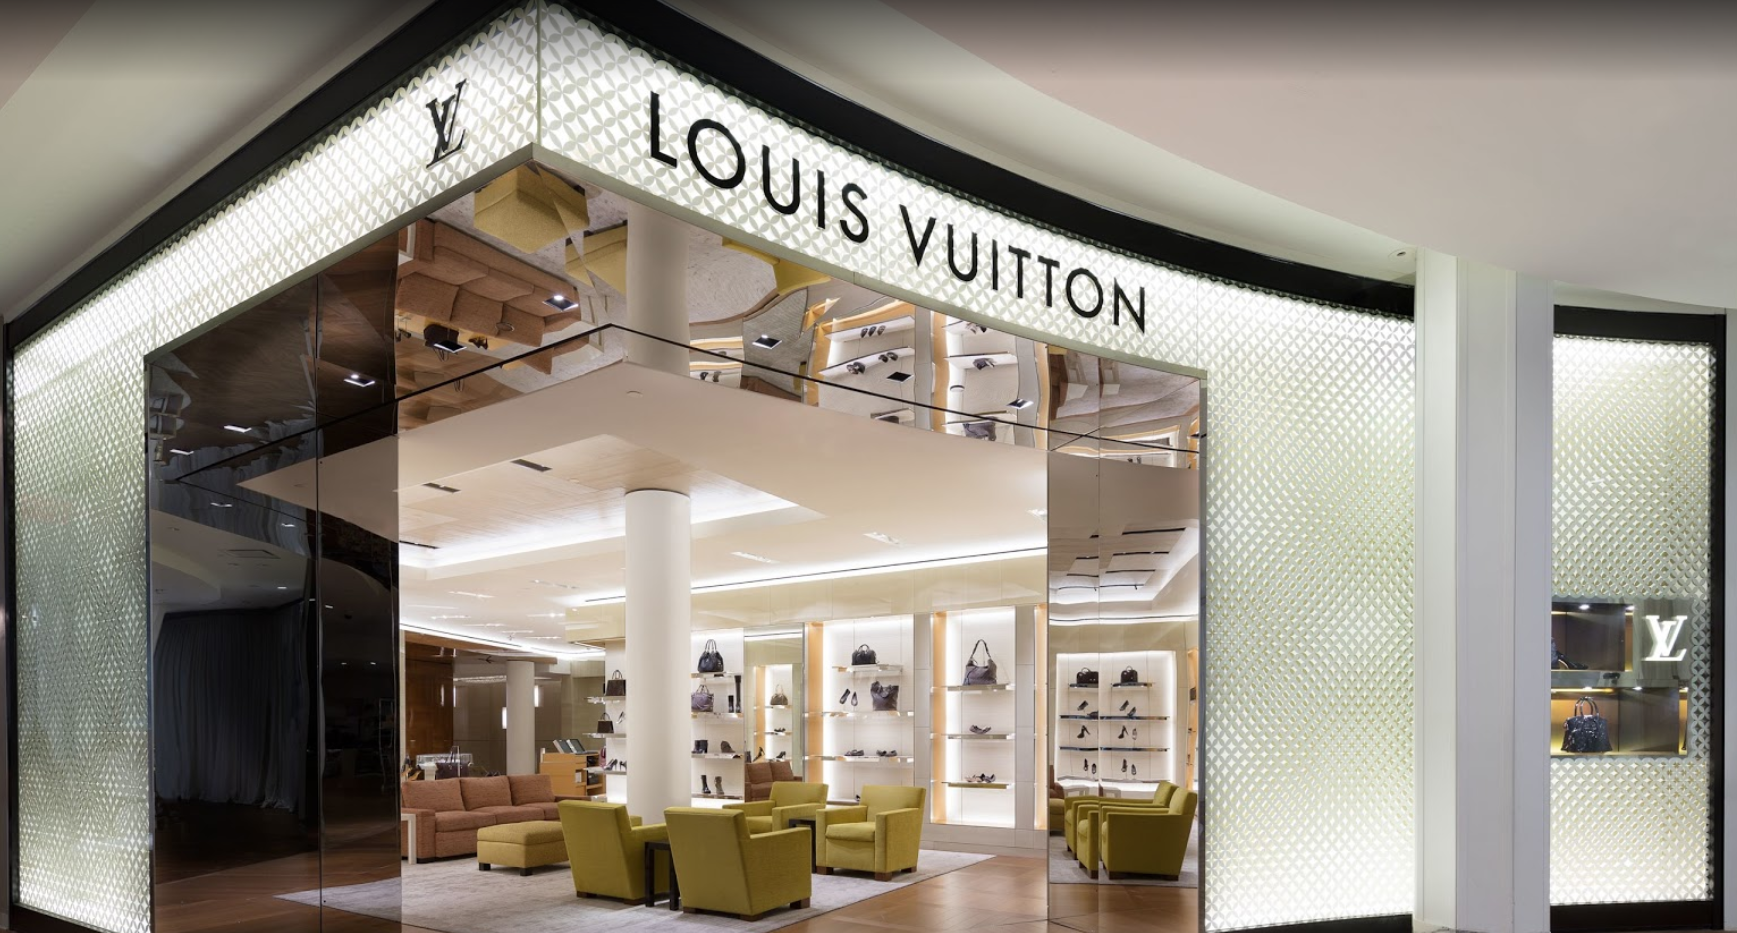 Louis Vuitton In Macy's Roosevelt Field